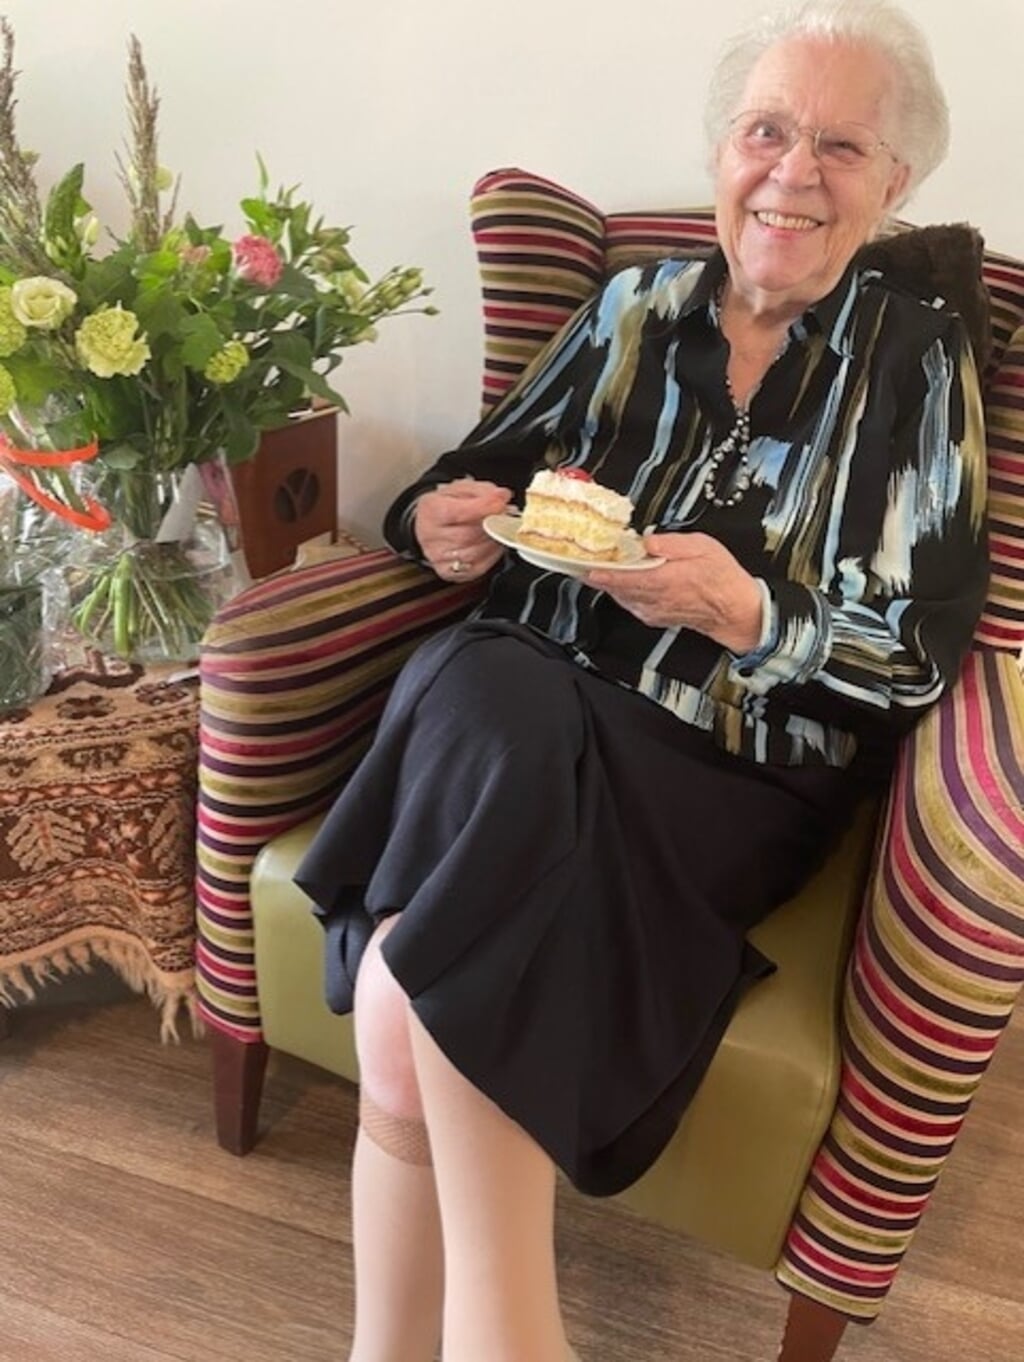 Mien Venhorst vierde onlangs haar 104de verjaardag. 
Ze woont in verpleeghuis Schavenweide, afdeling Koekendaal (Markenheem) in Doetinchem.